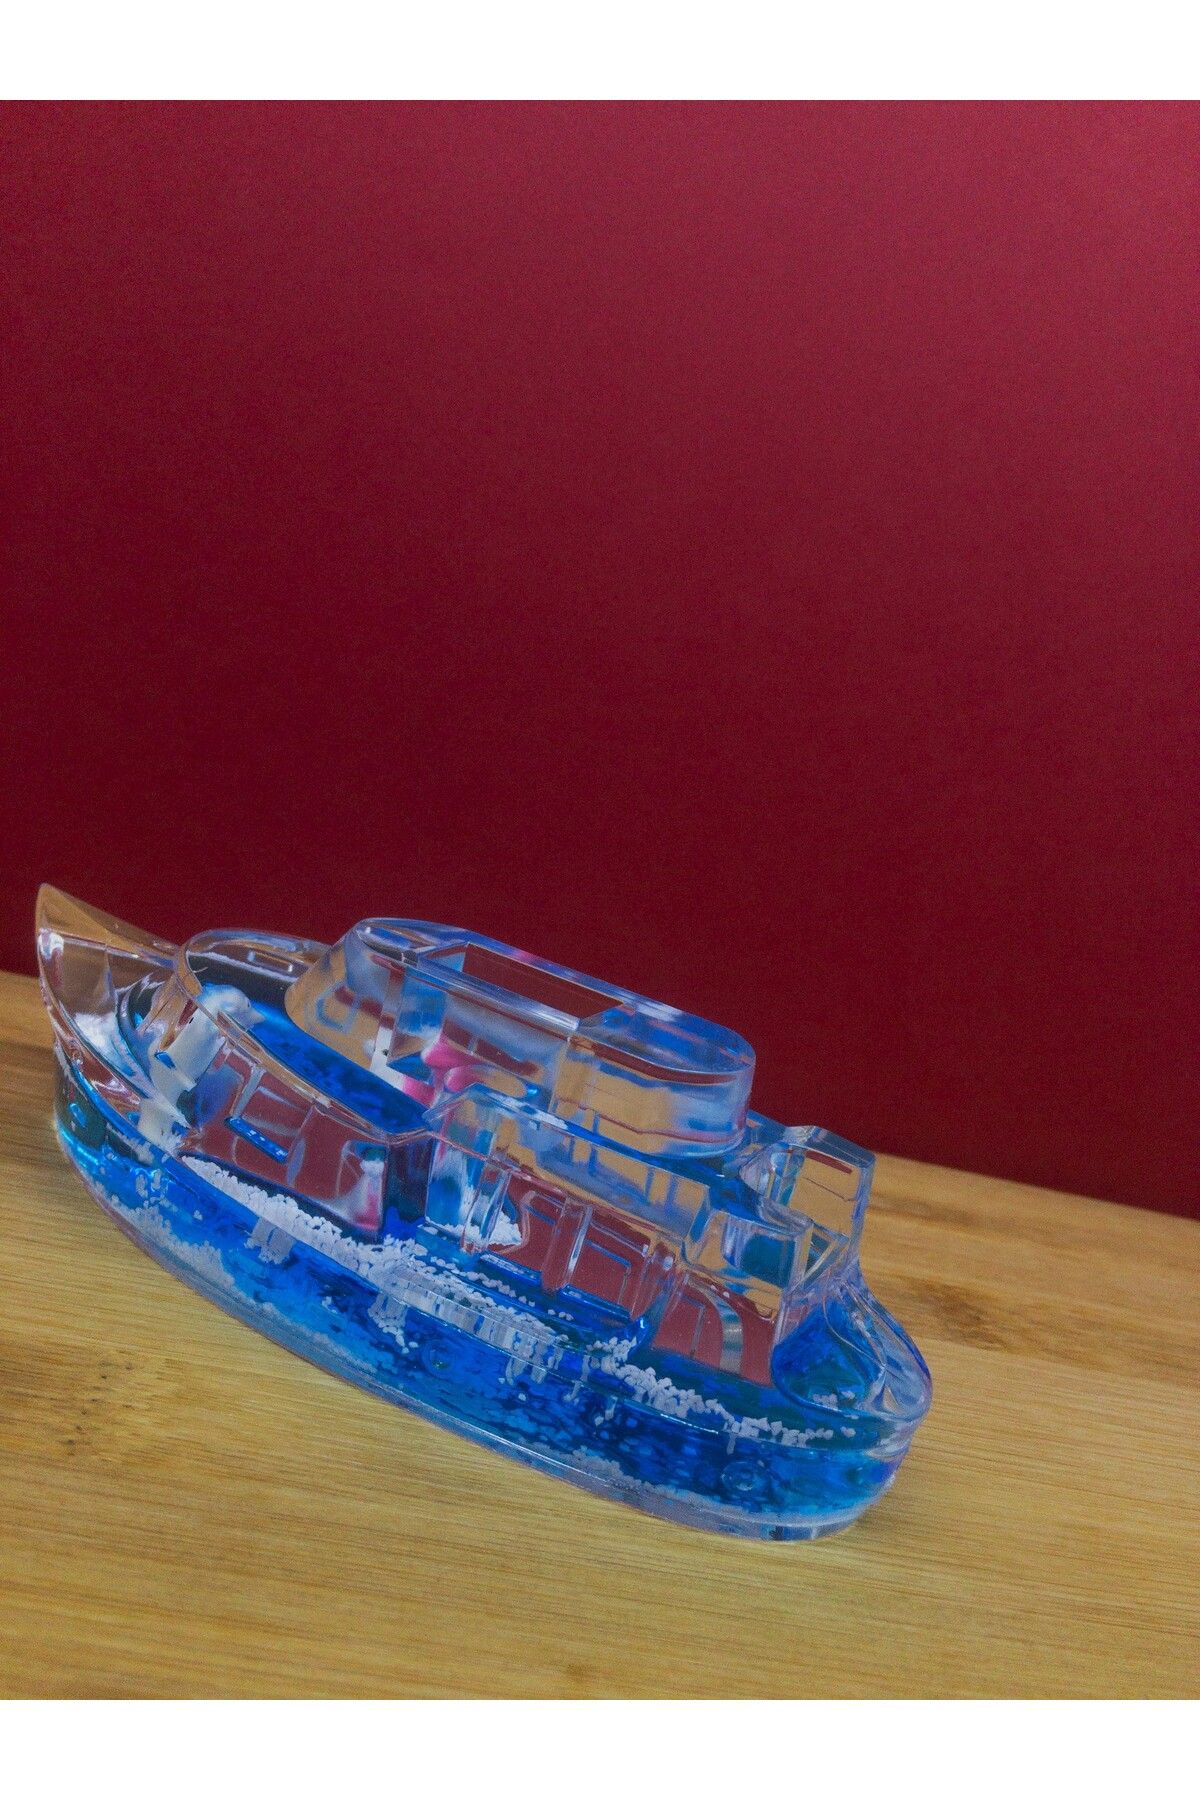 blackleg Crystal Boat Kristal Gemi Hediyelik Dekoratif Eşya Biblo